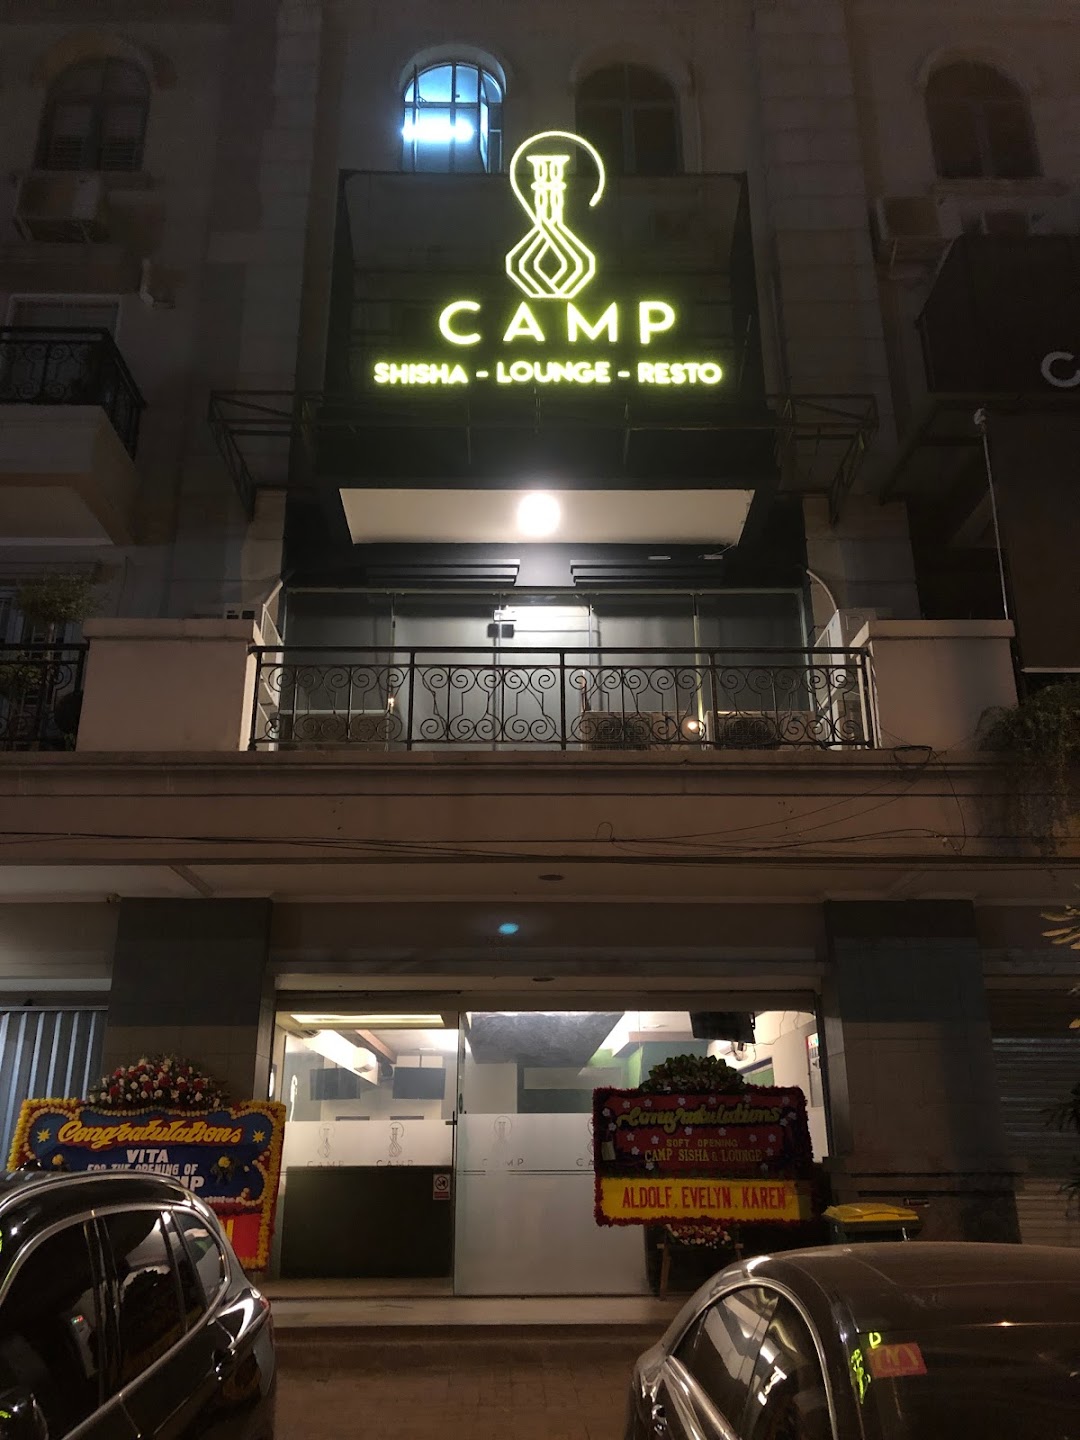 CAMP Shisha Lounge Restaurant